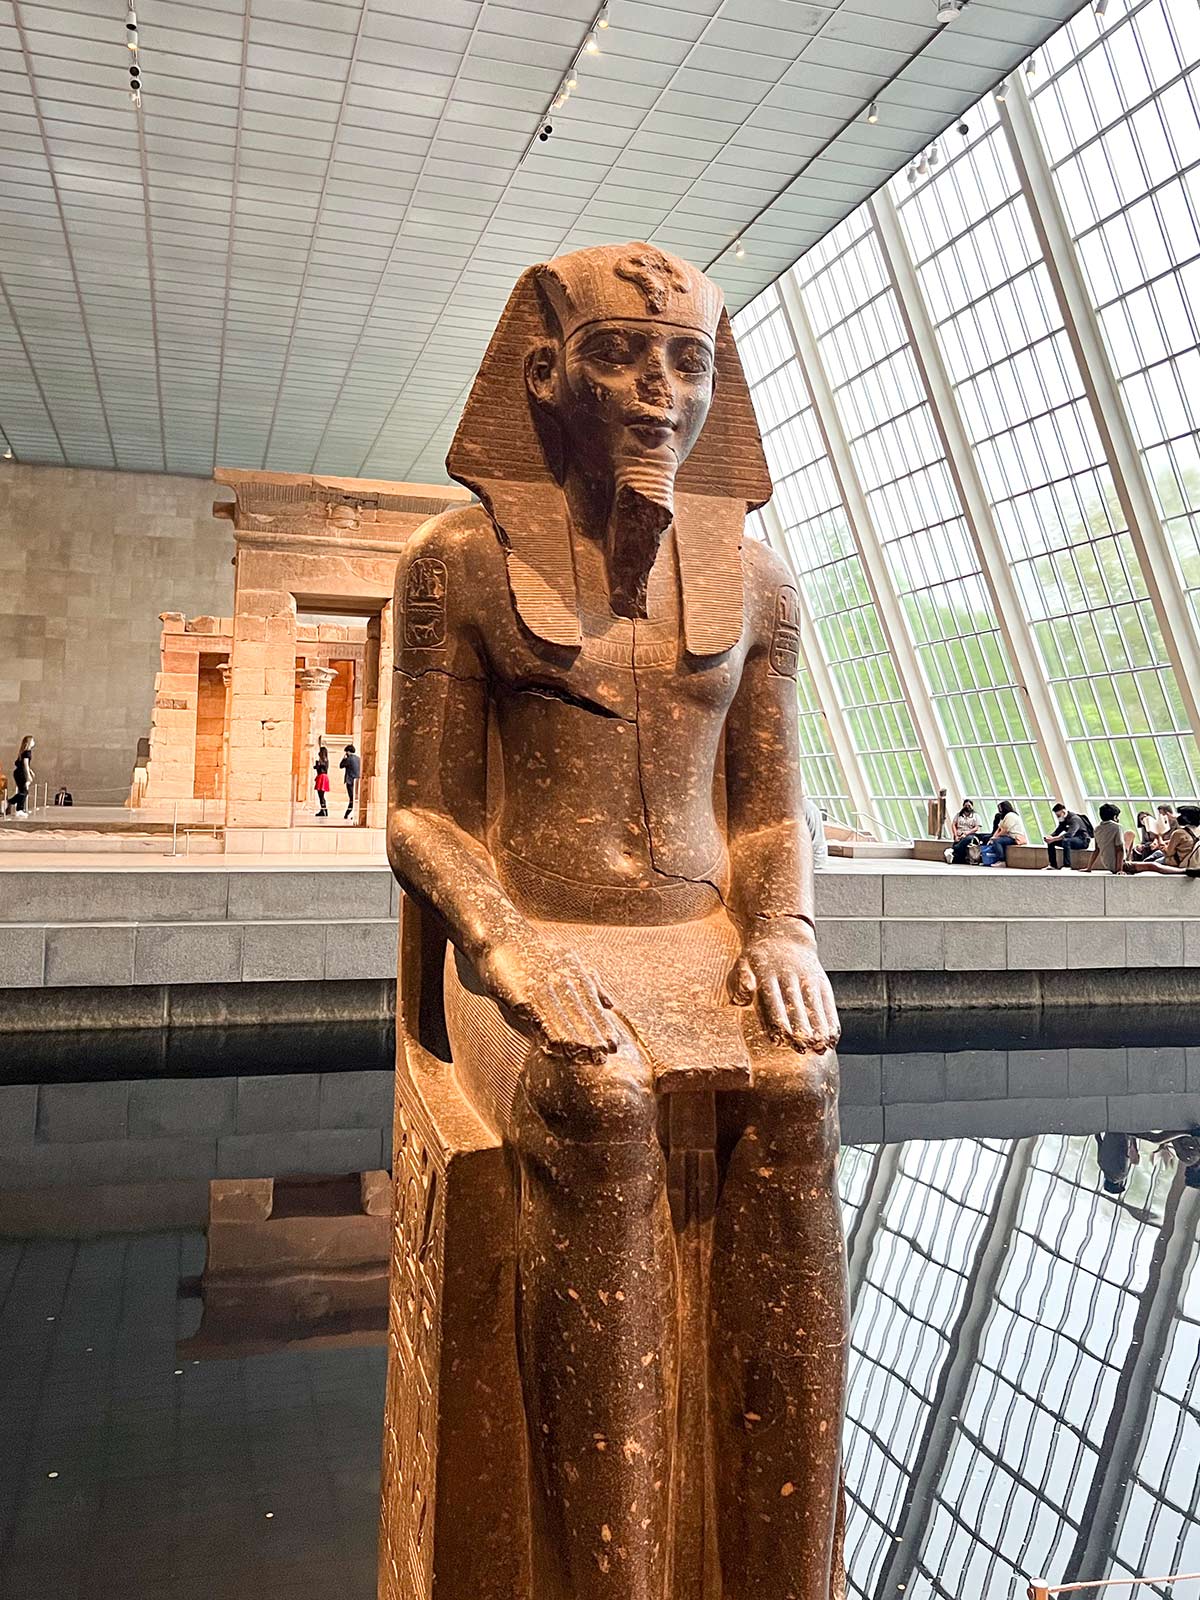 Temple Égyptien de Dendur, Musée MET, New York, États-Unis / The Egyptian Temple of Dandur, The Metropolitan Museum of Art, NY, NYC, USA